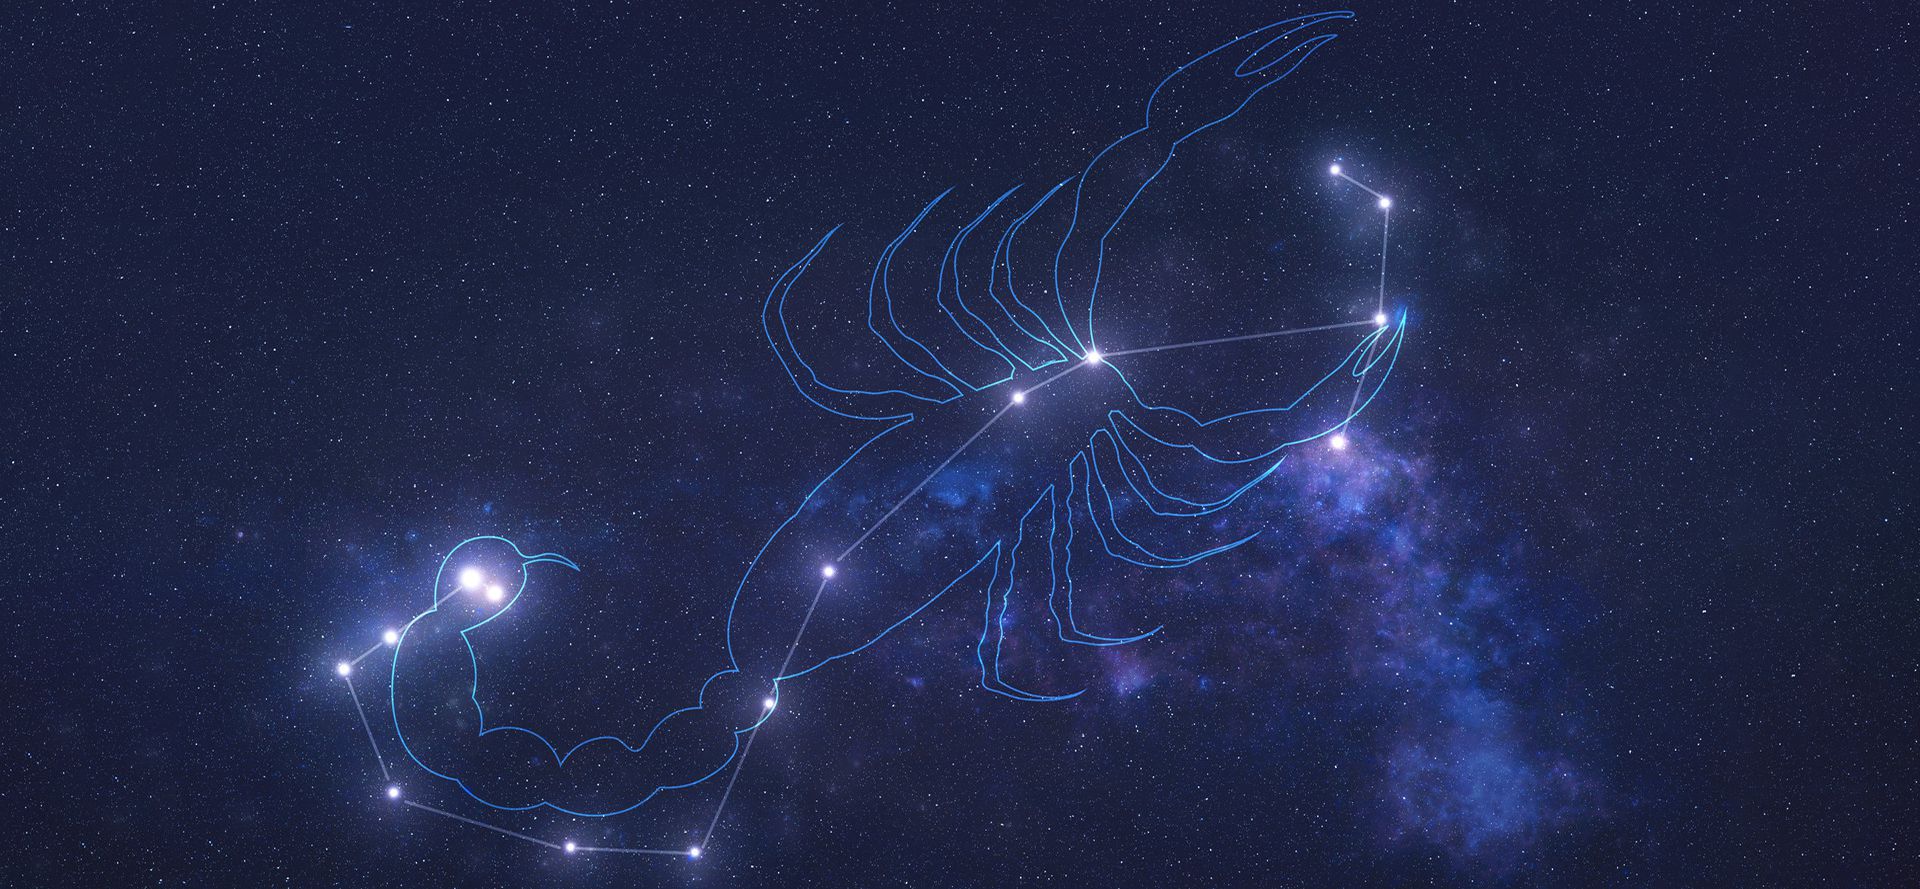 Scorpio constellation.